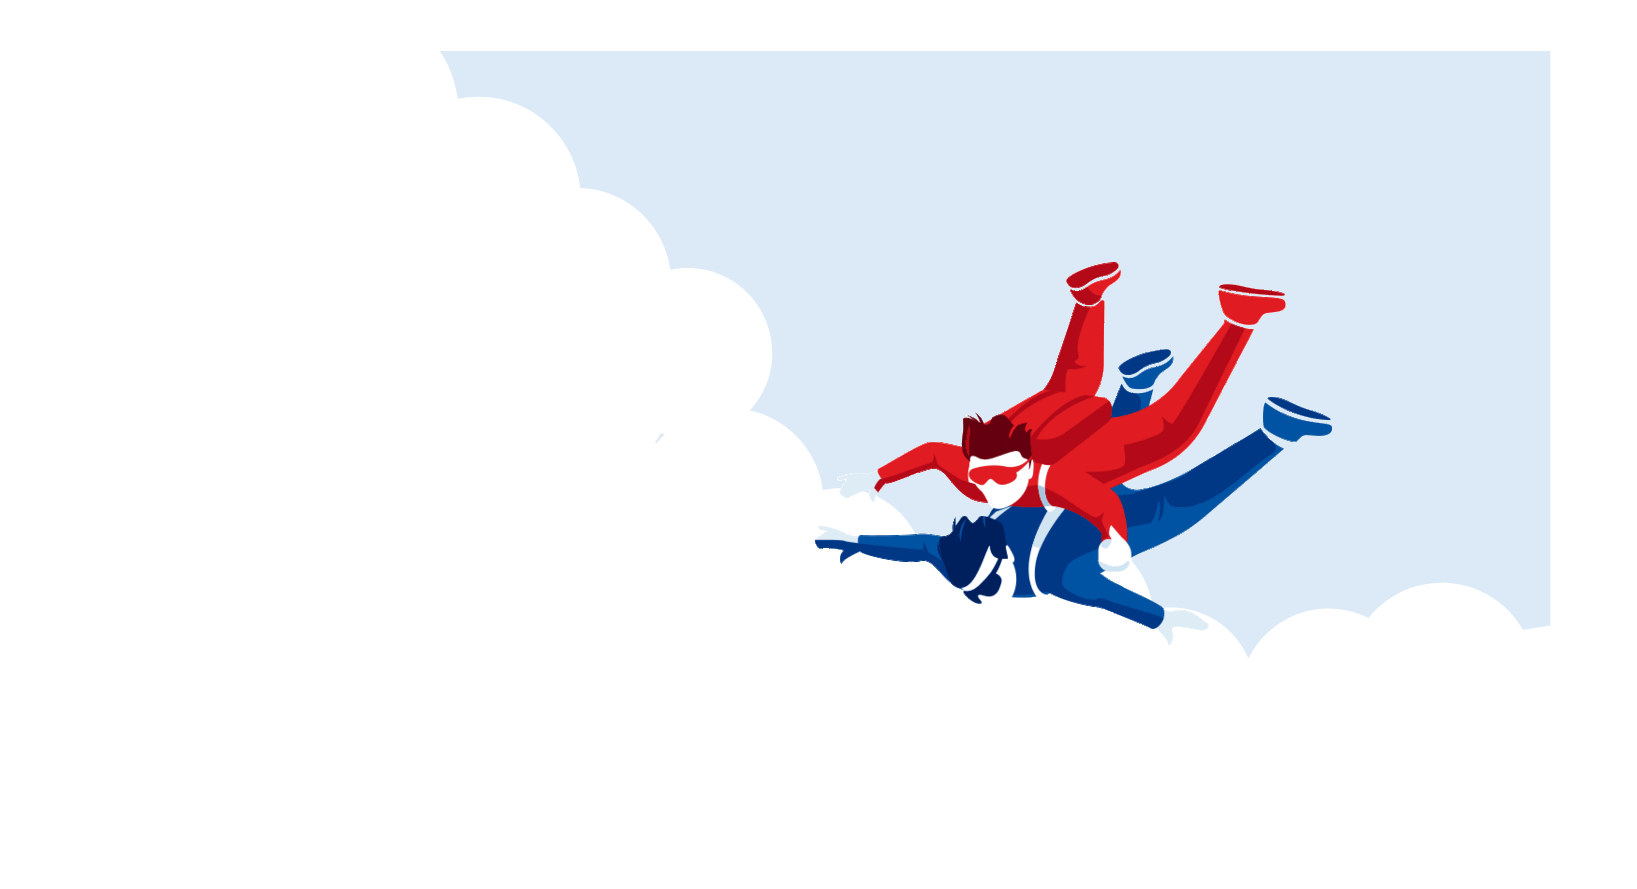 illustration de personnes en parachute pour symboliser l'accompagnement et la formation